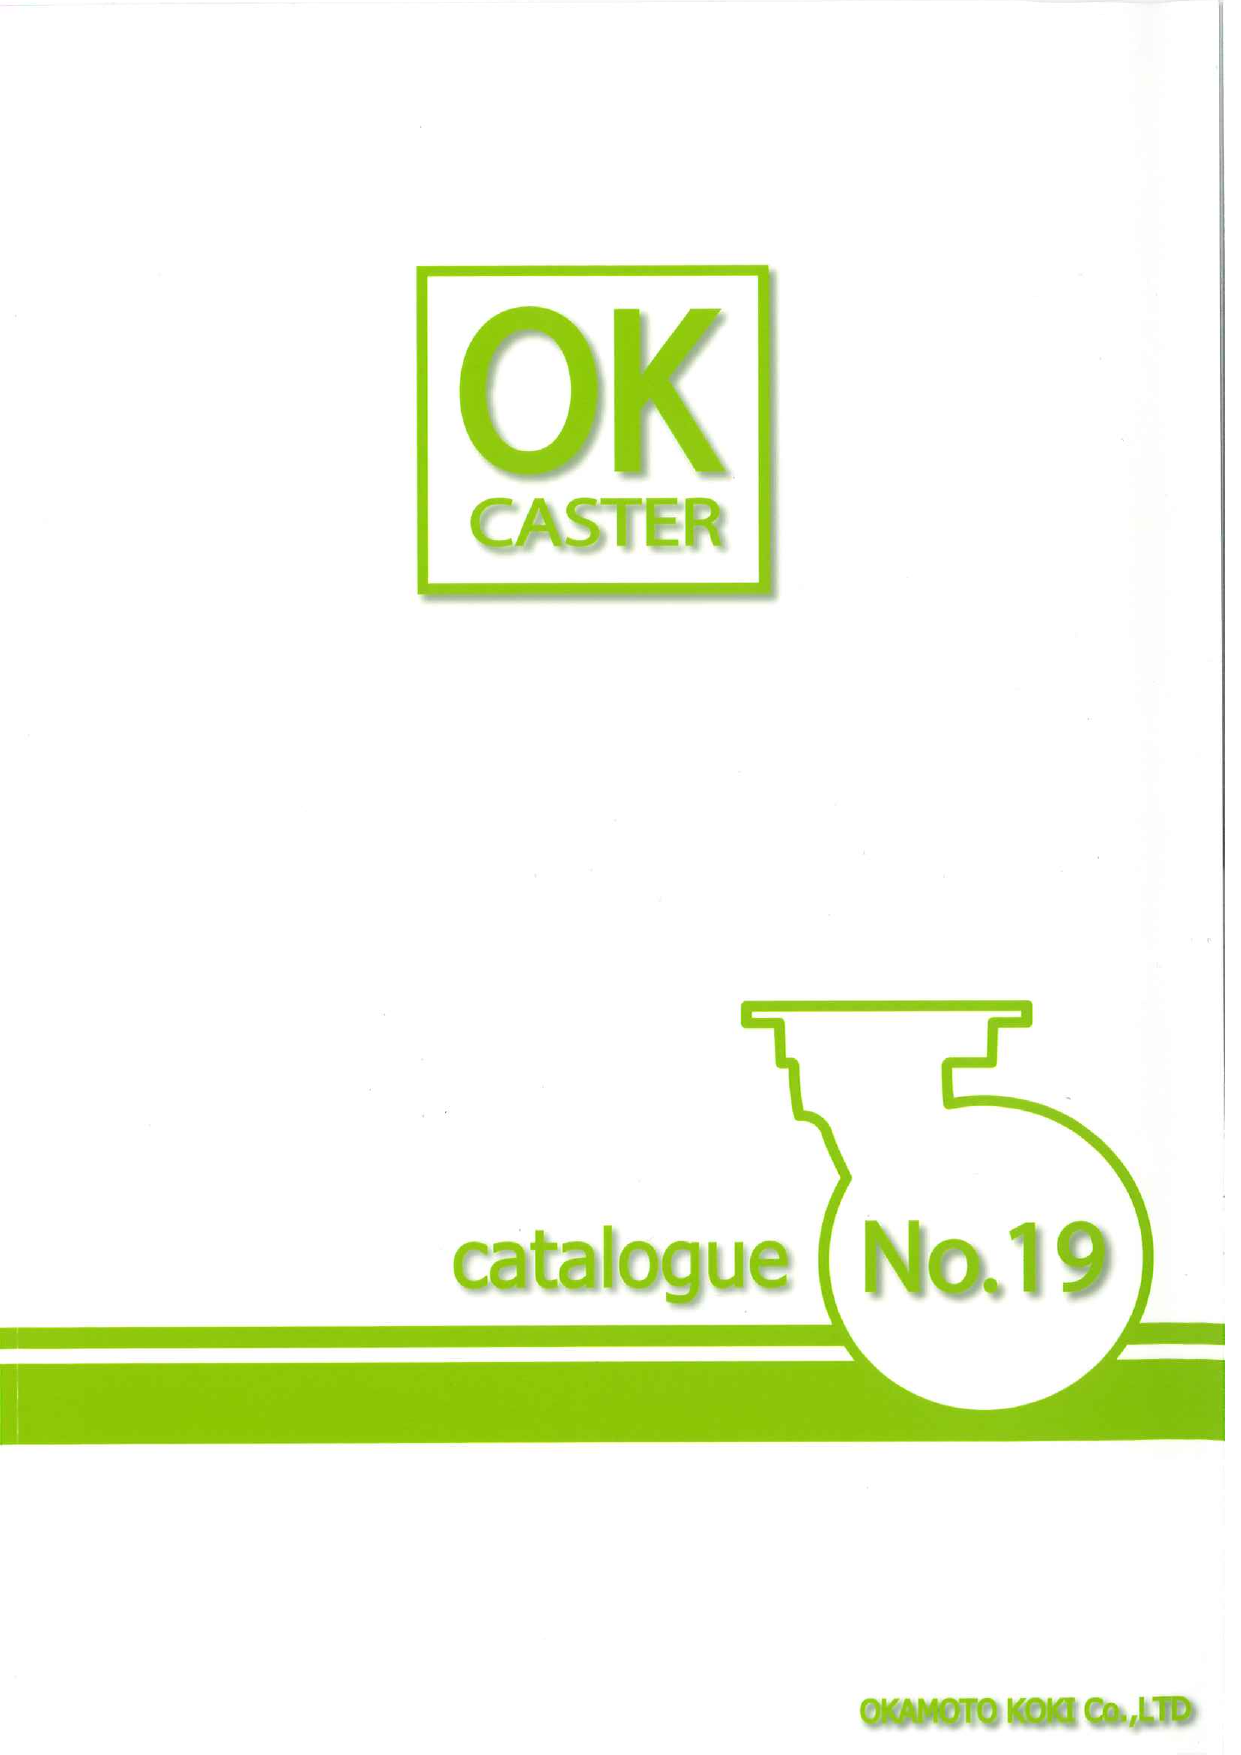 キャスター総合カタログ OK CASTER（株式会社岡本工機）のカタログ無料 